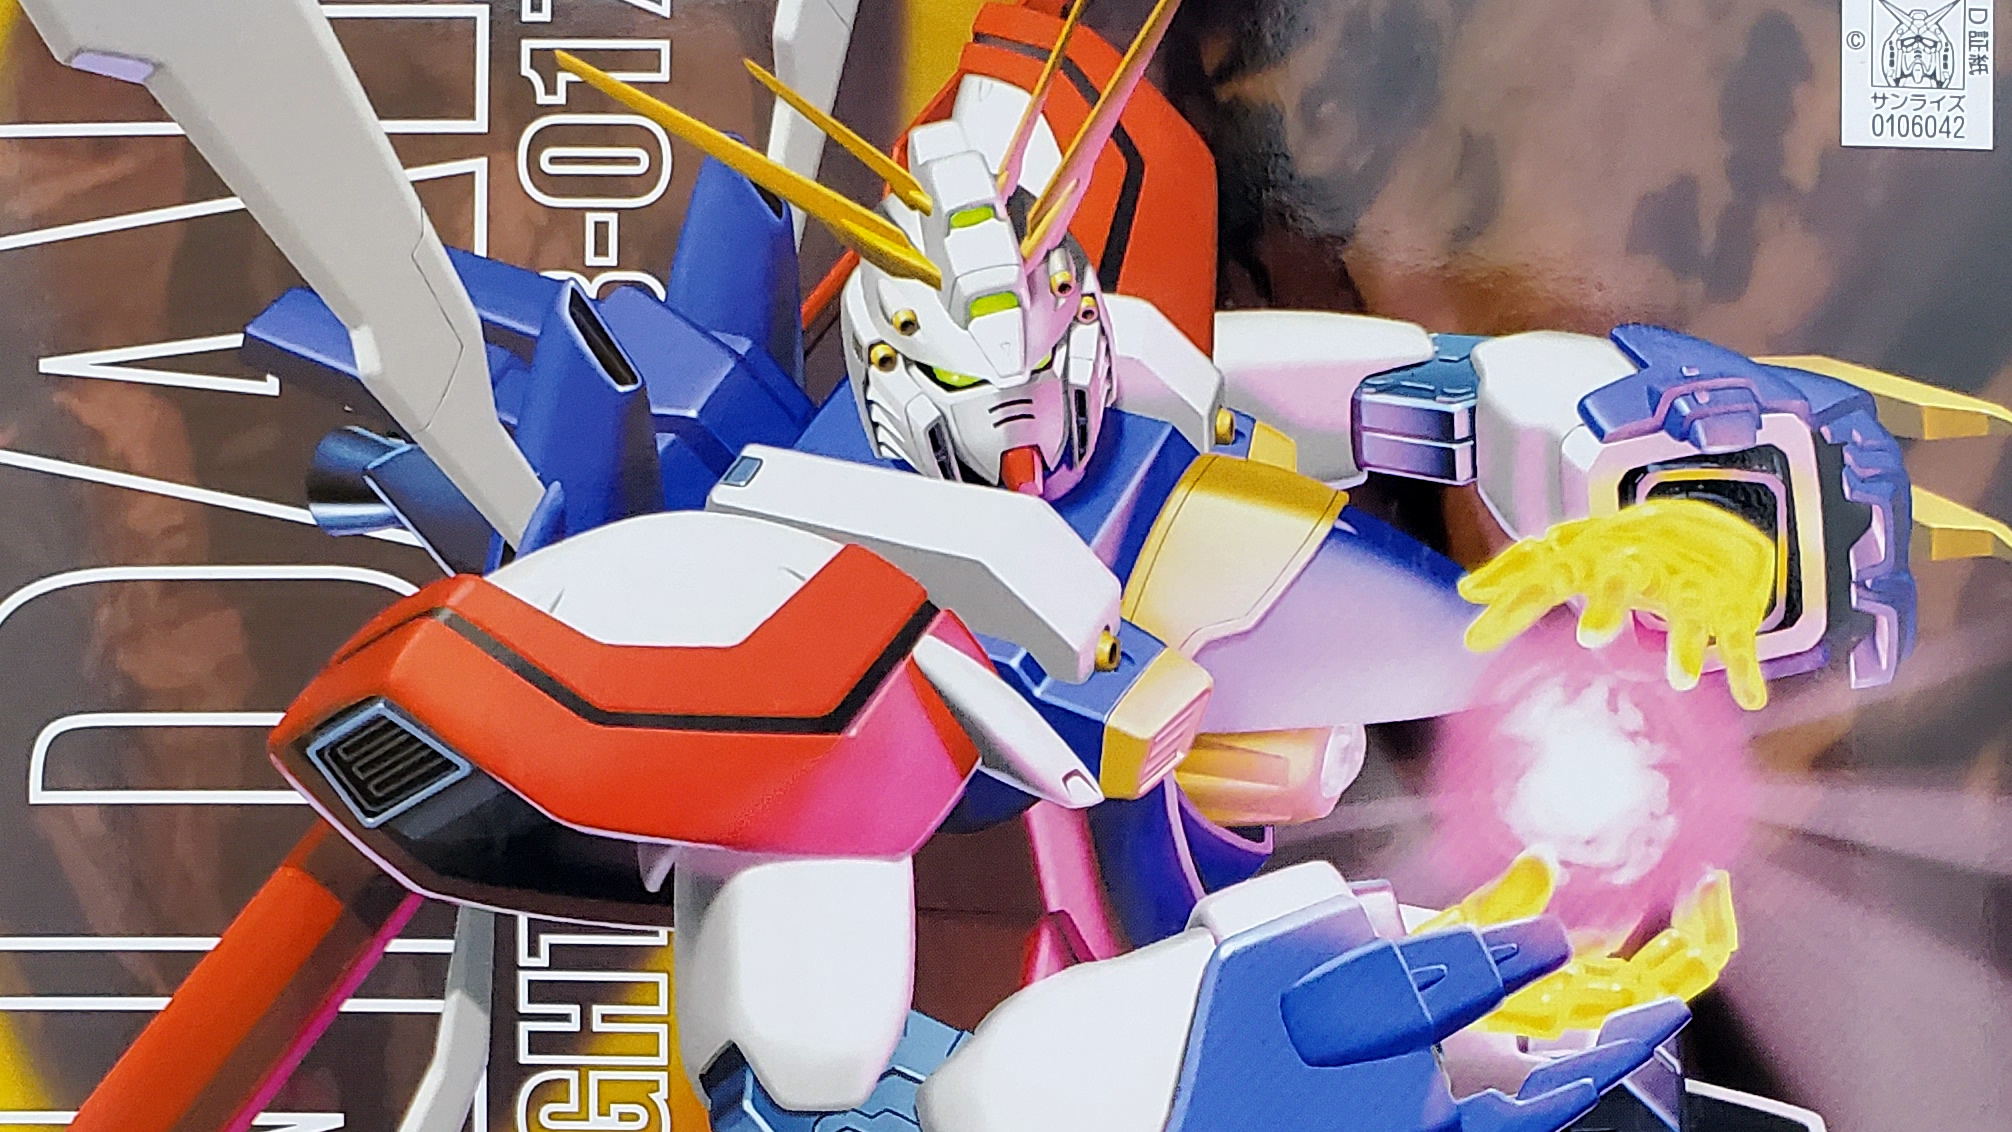 Bandai Hobby MG God Gundam G Gundam, BAN106042